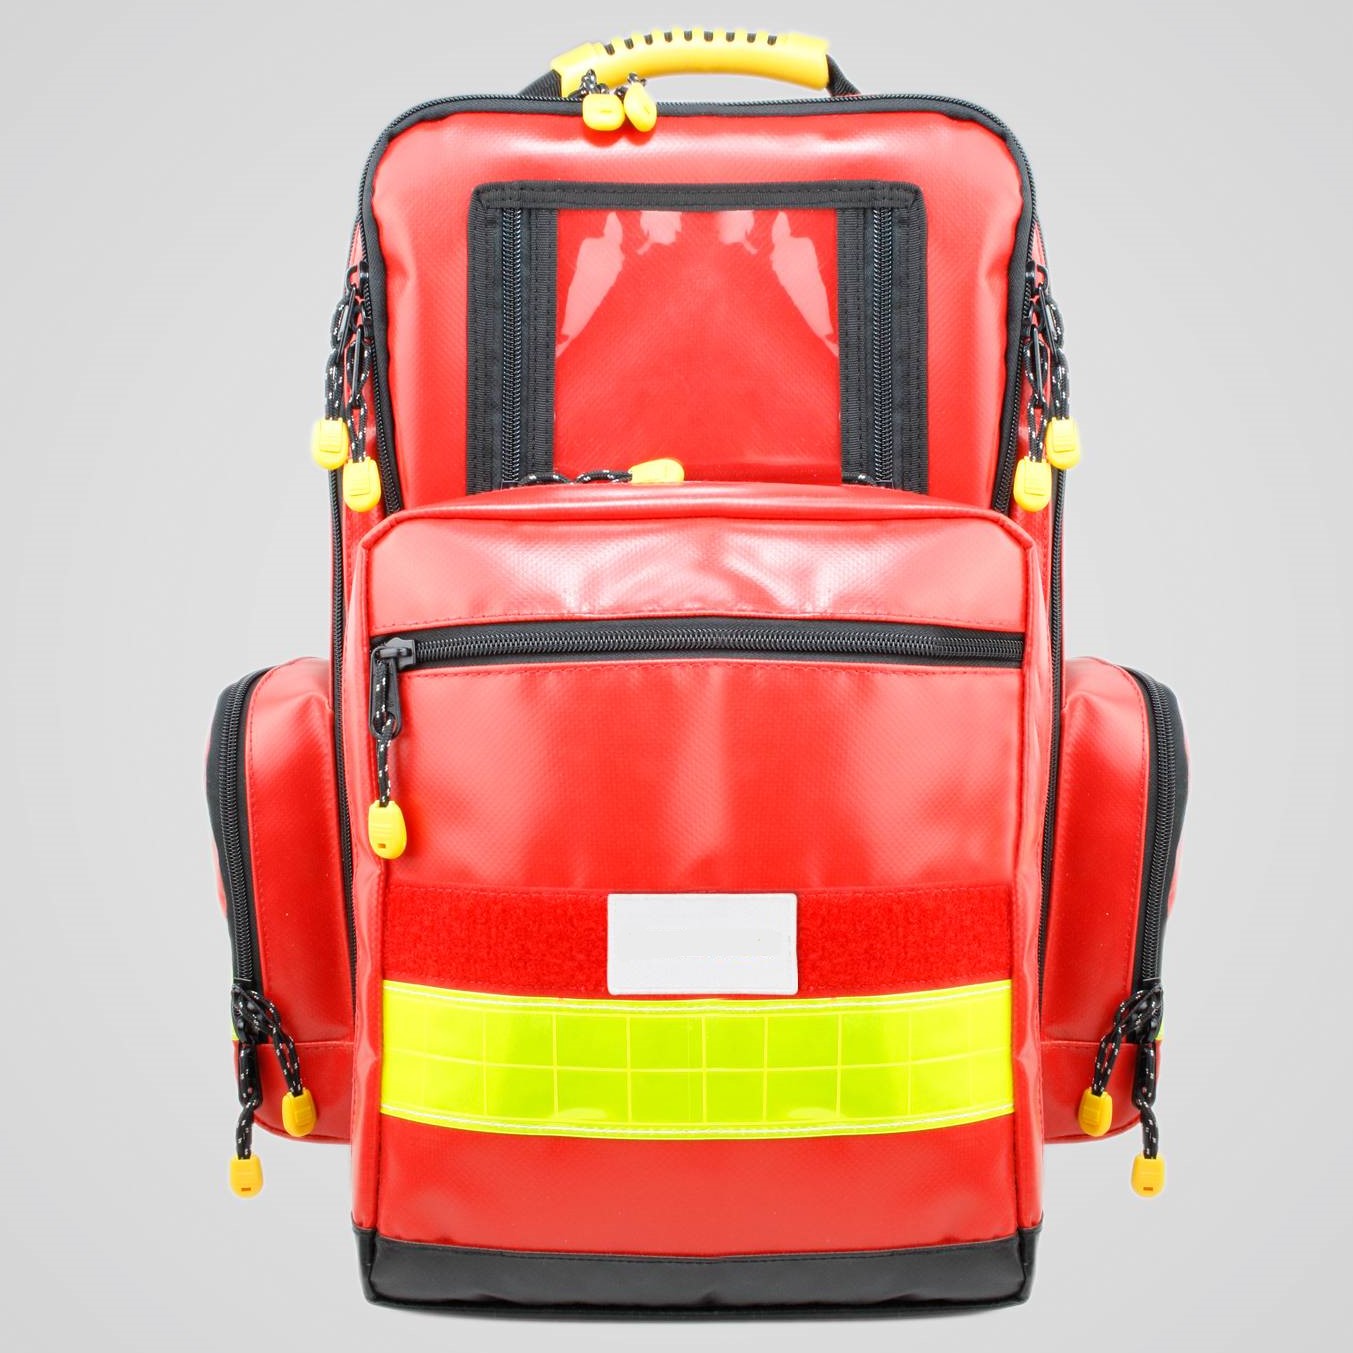 Notfallrucksack für den mobilen AED Defibrillator Einsatz